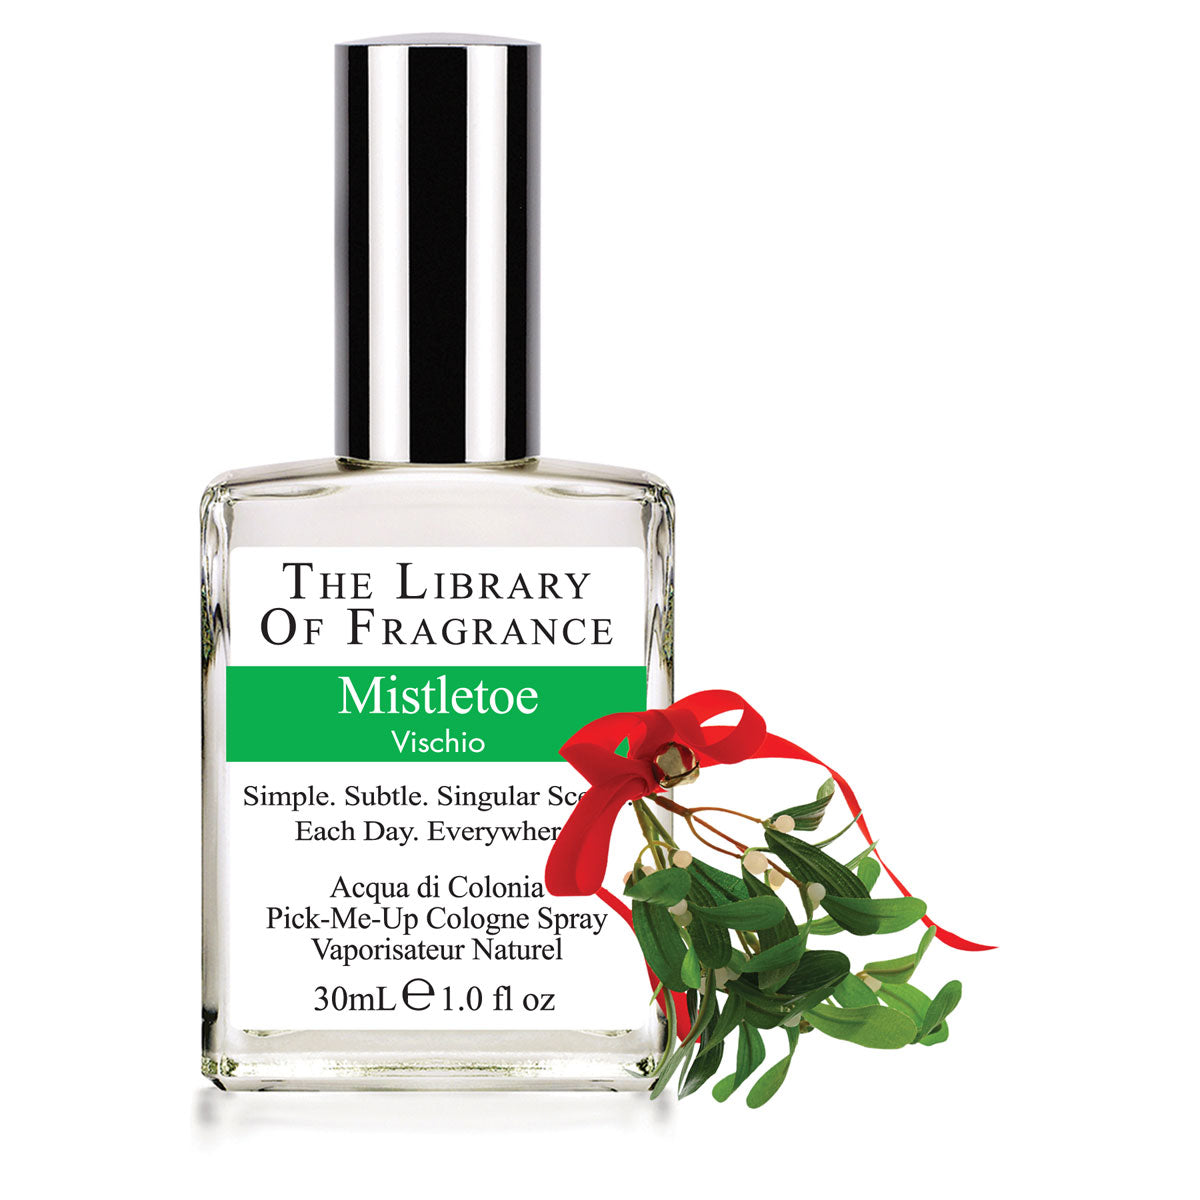 The Library Of Fragrance Mistletoe 30ml Cologne AKA Demeter Fragrance